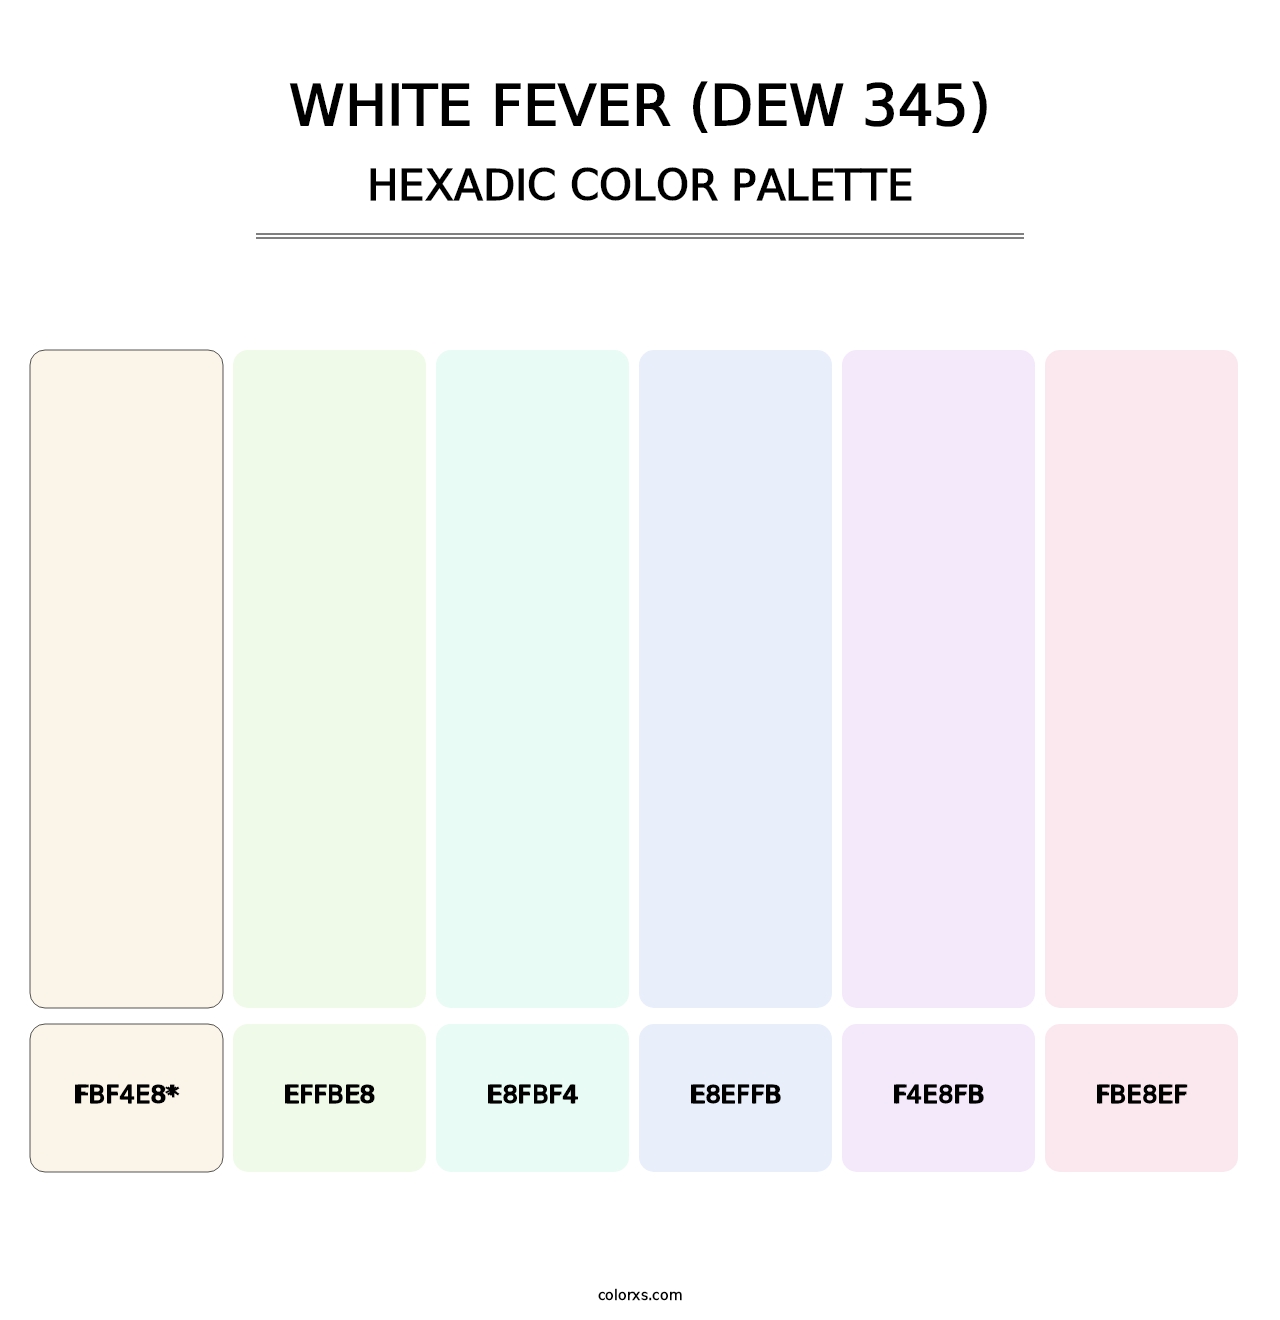 White Fever (DEW 345) - Hexadic Color Palette